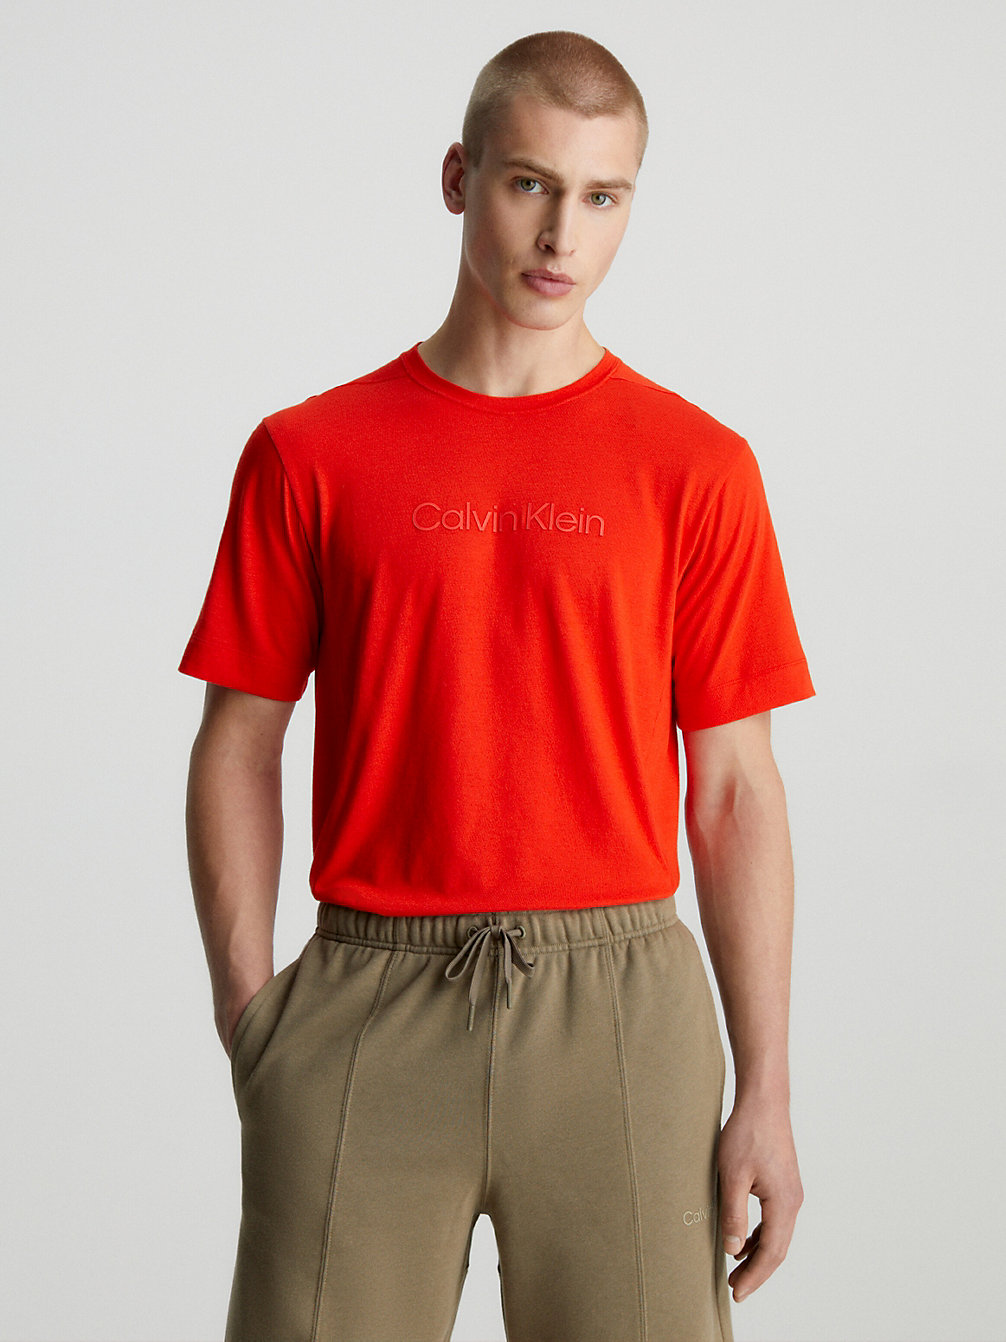 HAZARD > T-Shirt Sportowy > undefined Mężczyźni - Calvin Klein